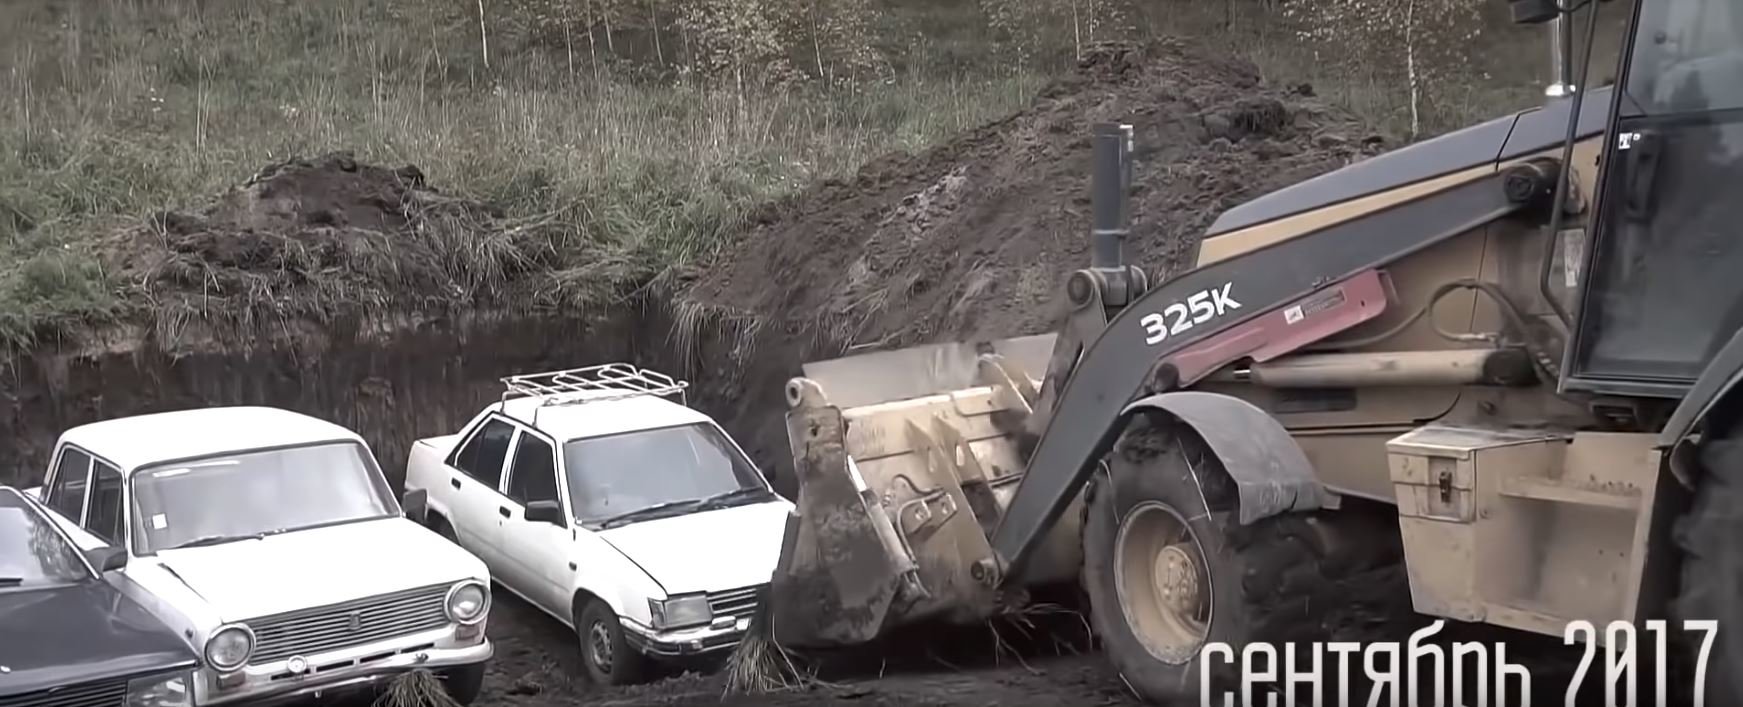 Ruští YouTubeři před rokem zakopali trojici aut, teď je vykopali a pokusí se je oživit